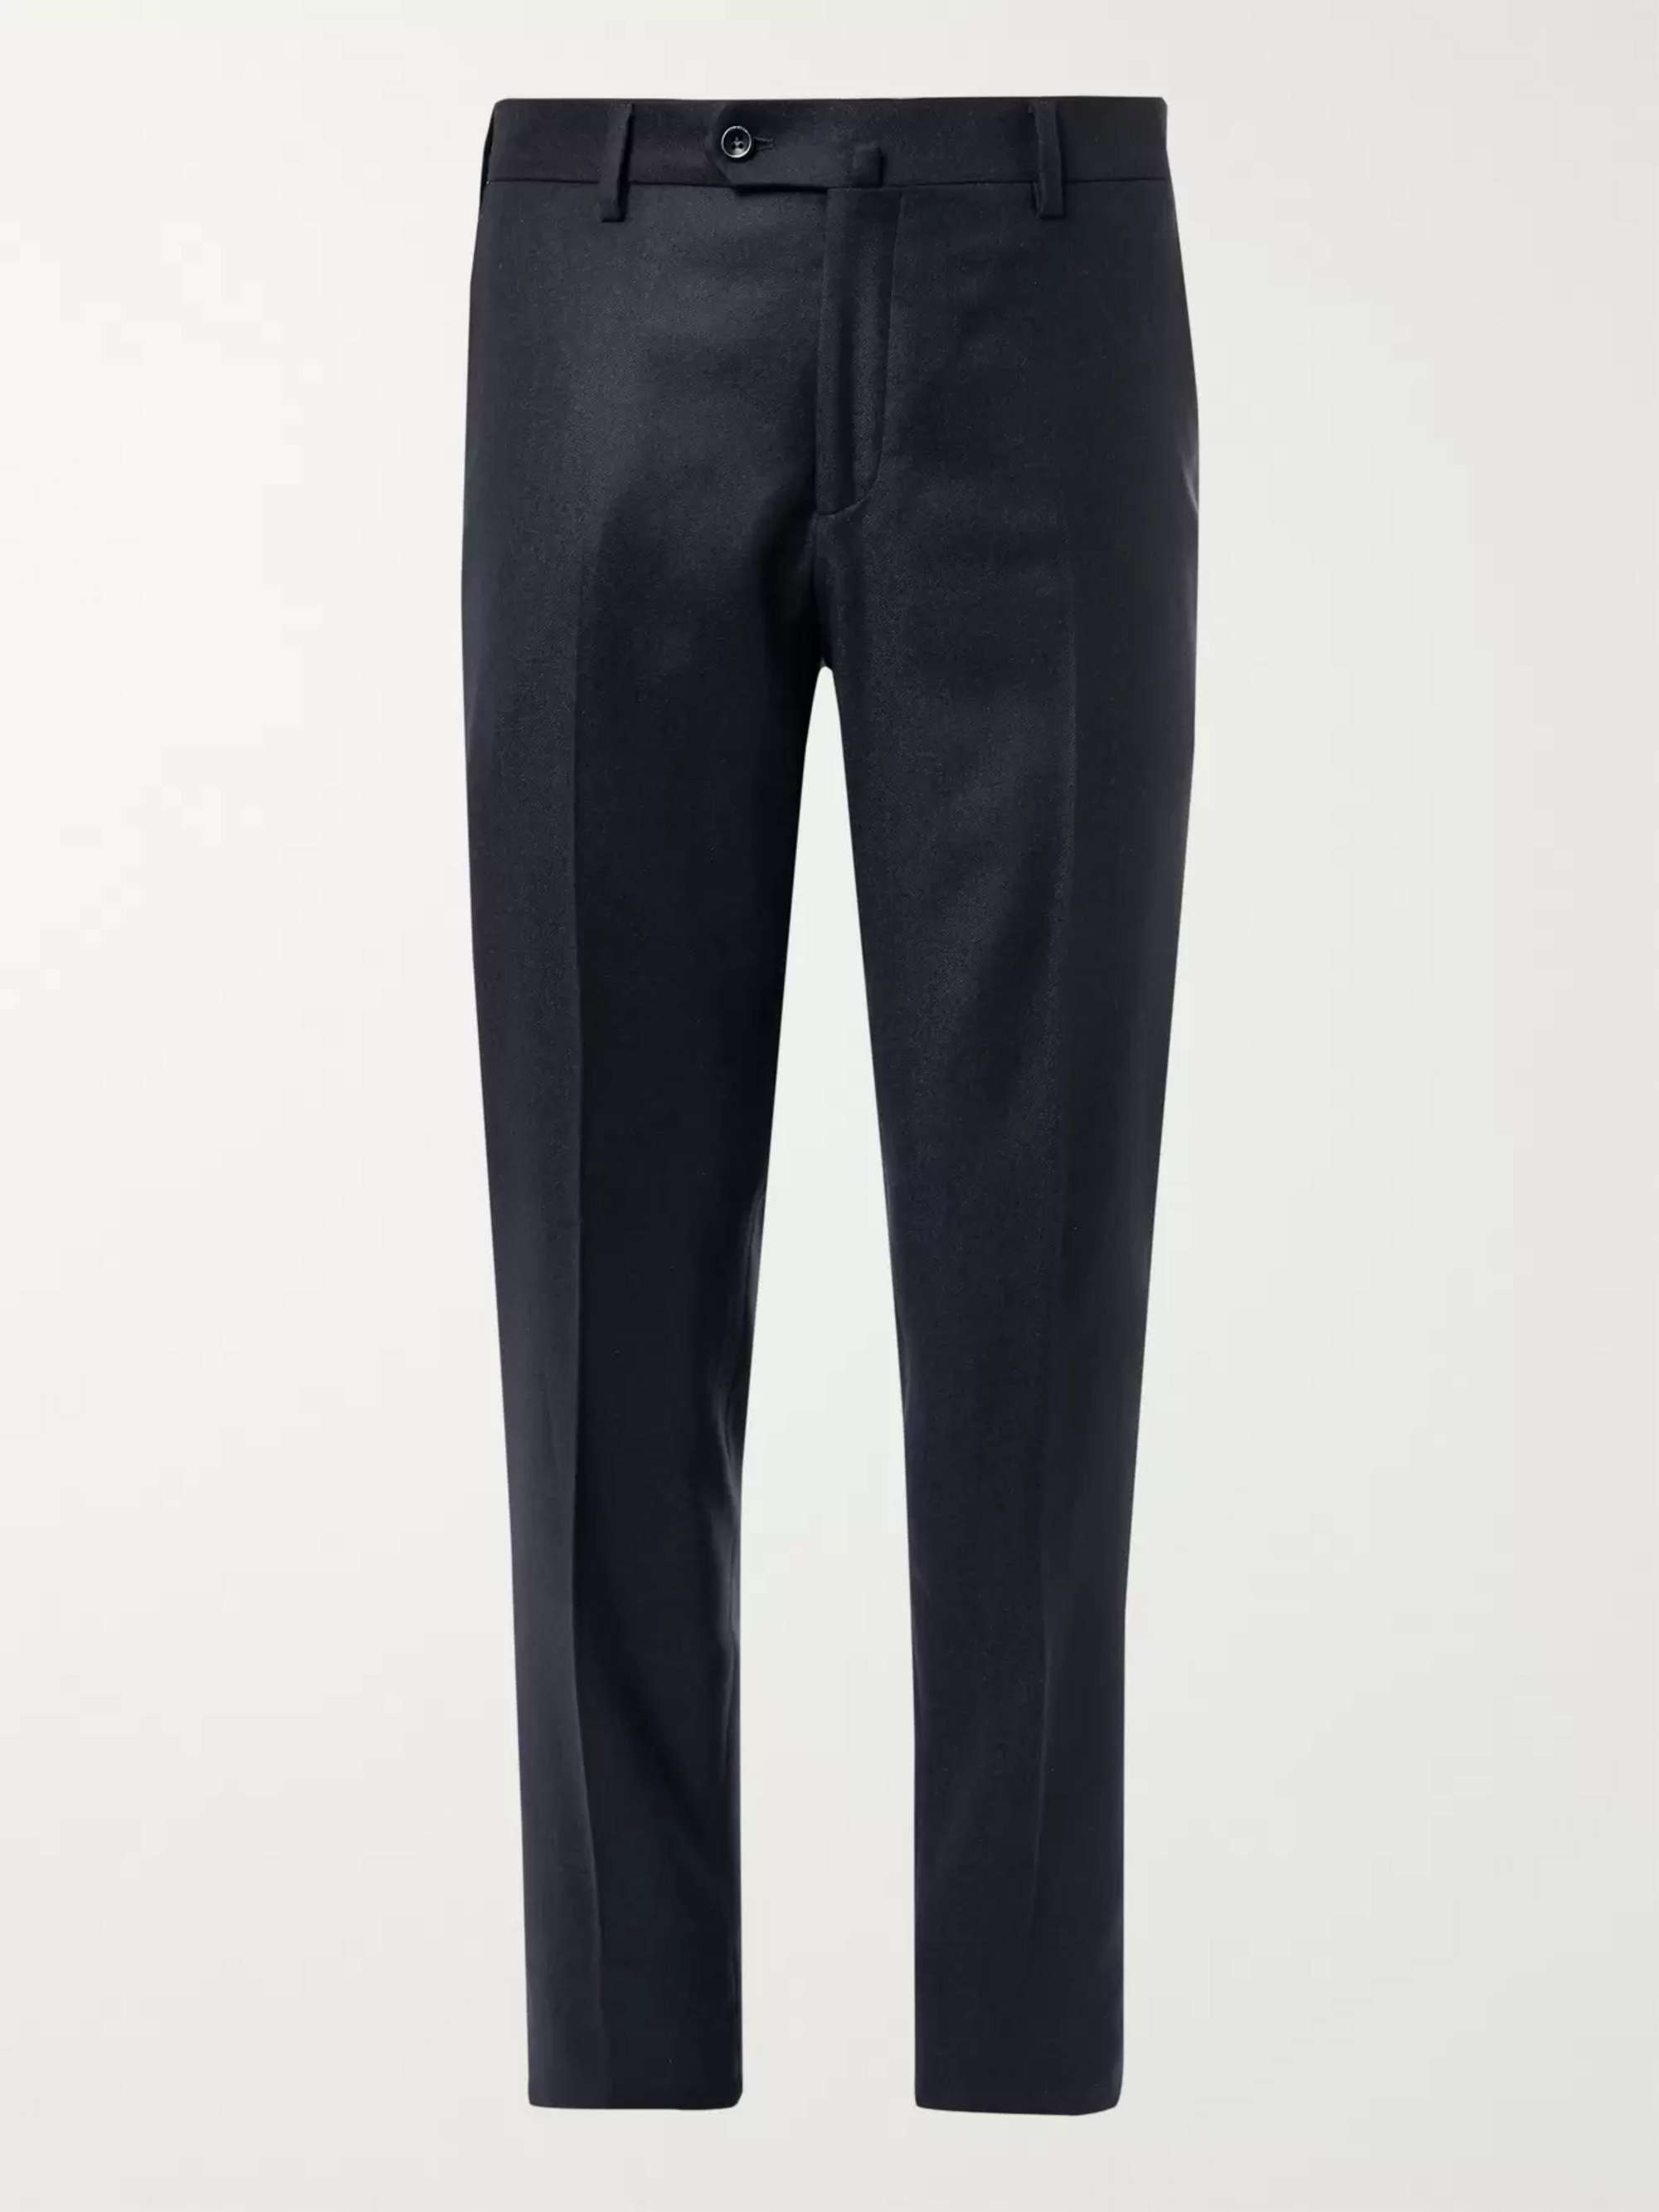 LORO PIANA Slim-Fit Cashmere Trousers | MR PORTER